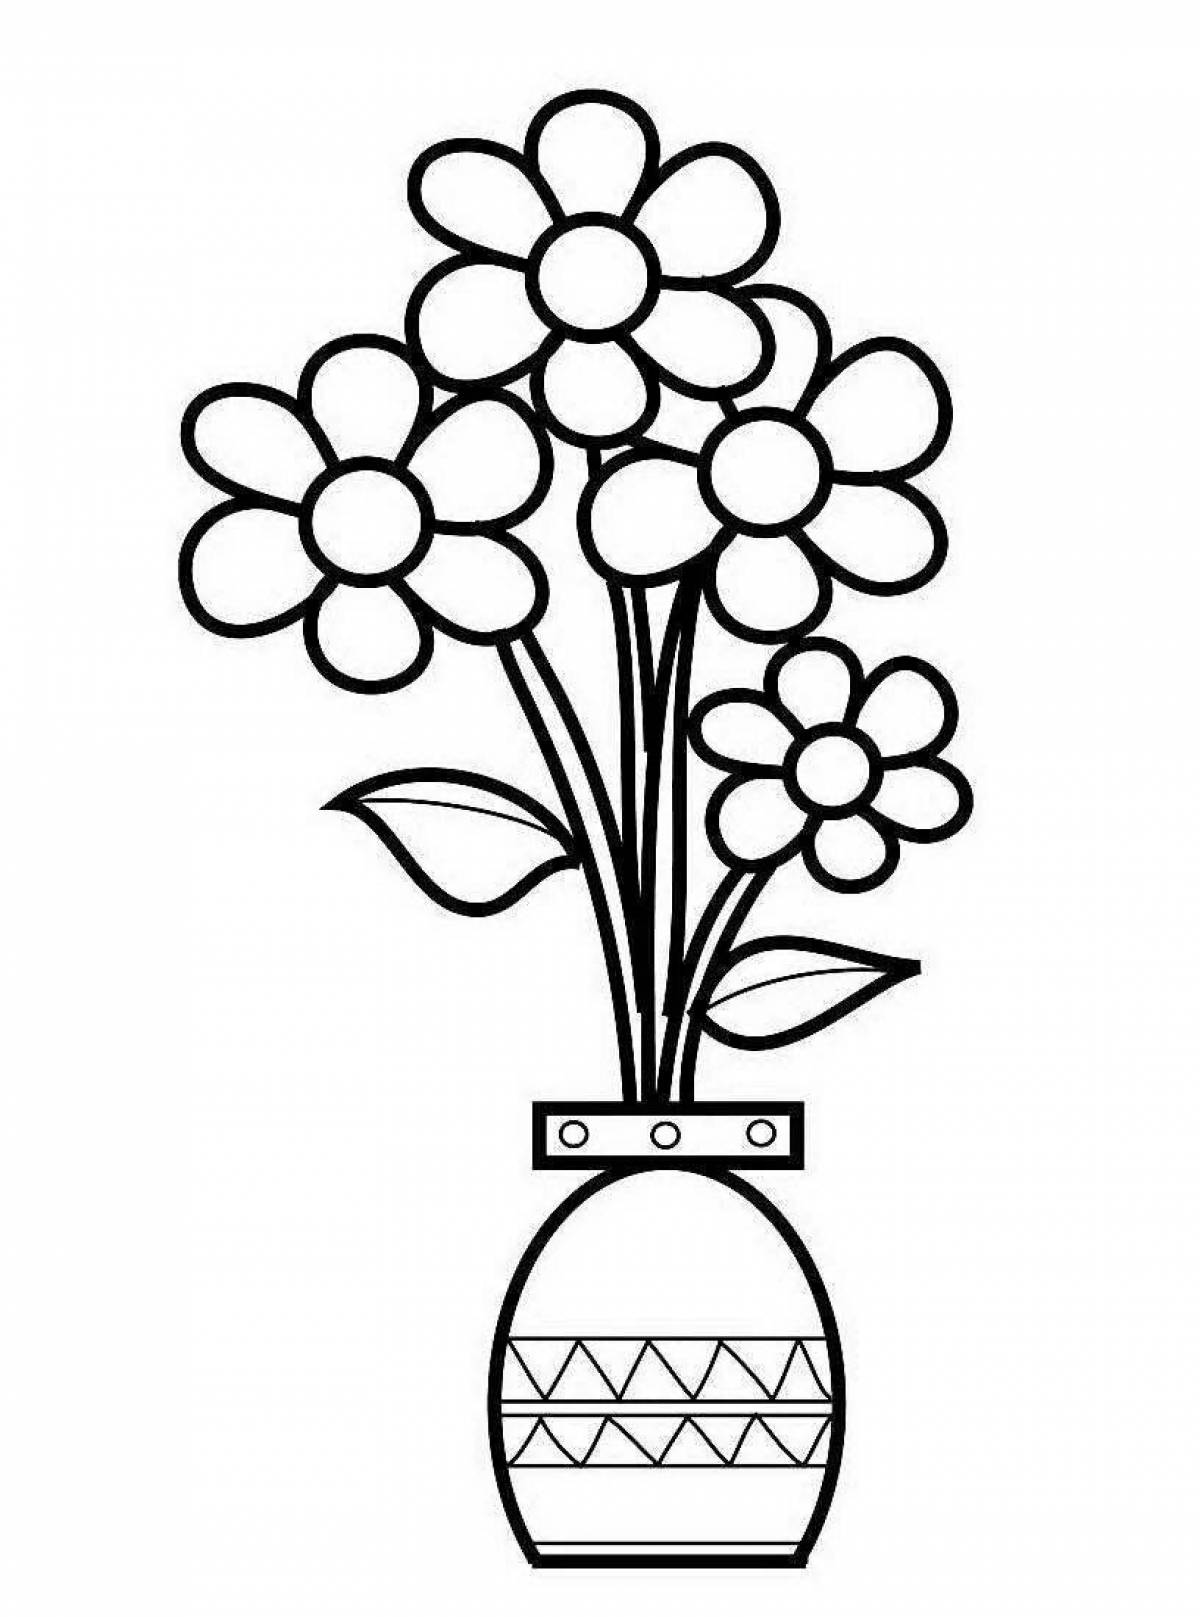 Gorgeous flower vase for children aged 8-9